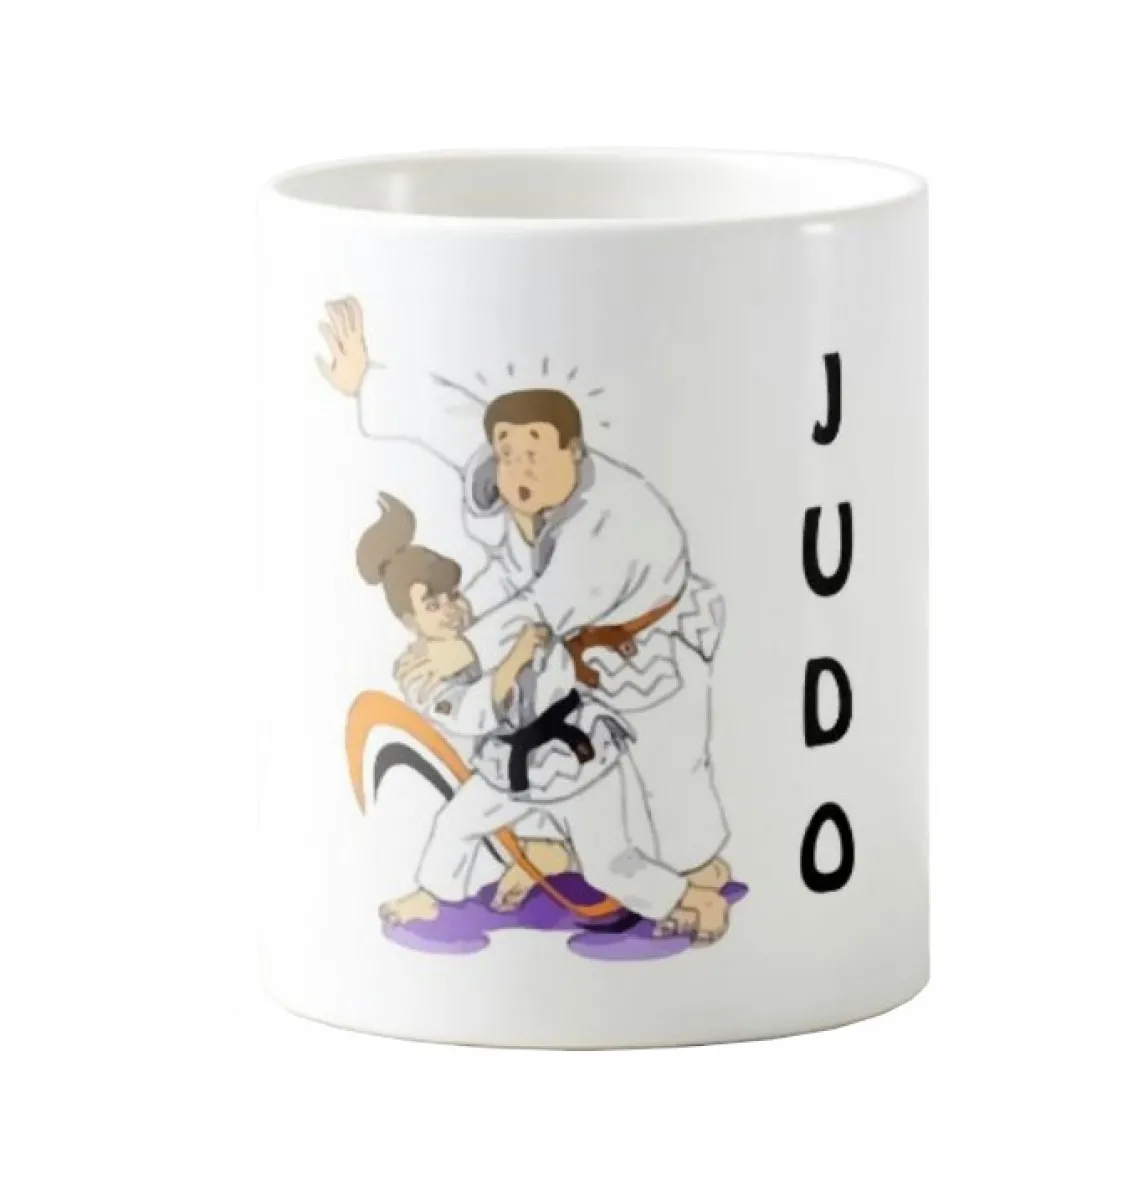 Mug - Coffee mug - Judo shoulder throw mug